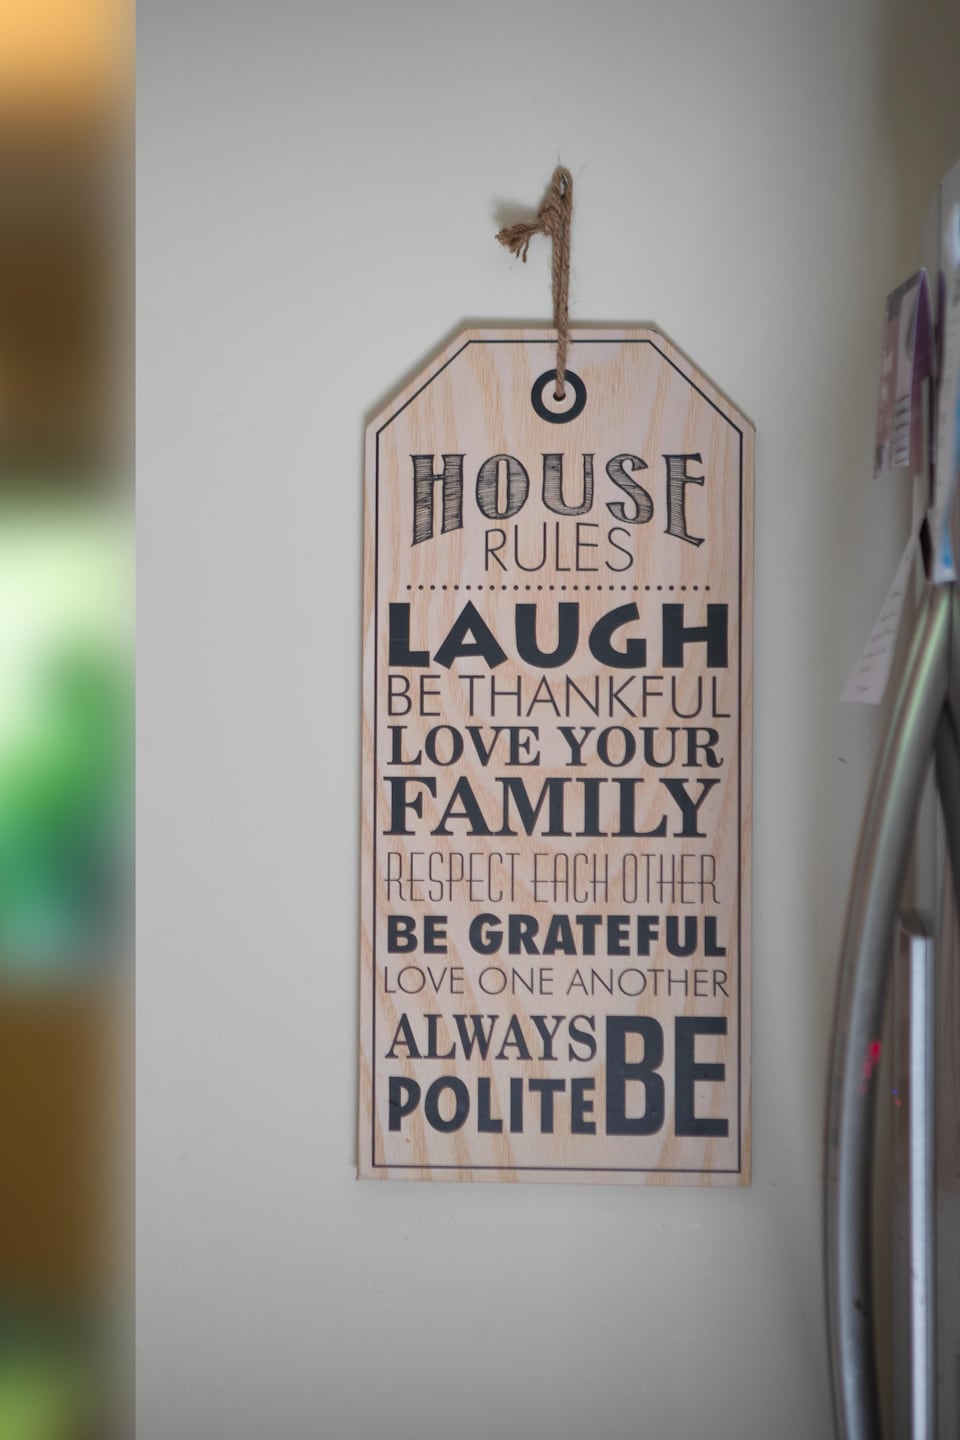 Une affiche décorative dans la cuisine de Mallory indiquant les règles de la maison : rire, aimer sa famille, respecter les autres, etc.